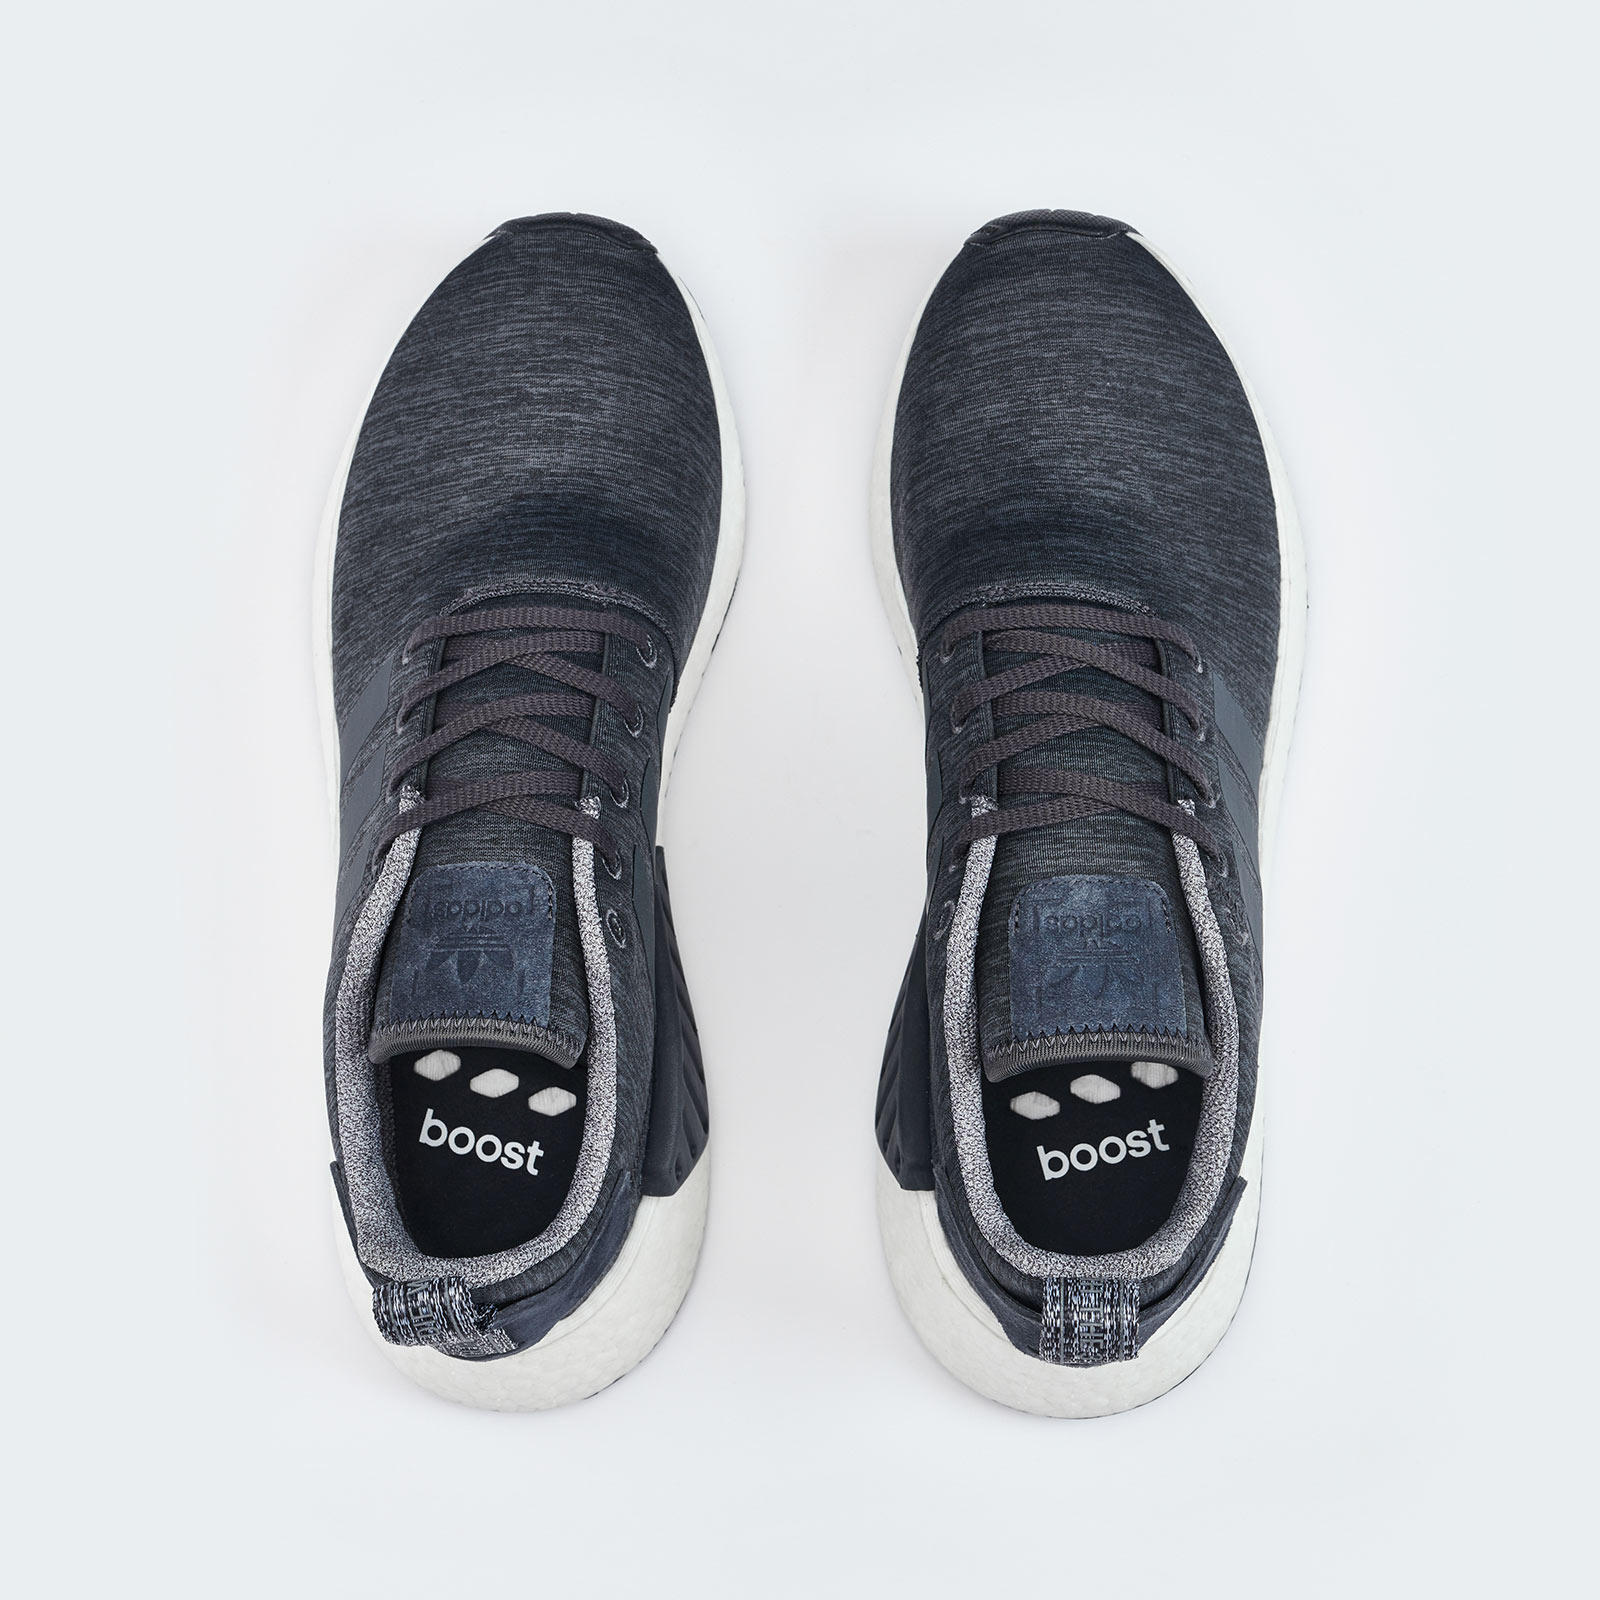 Adidas Originals NMD_R2
Dark Grey